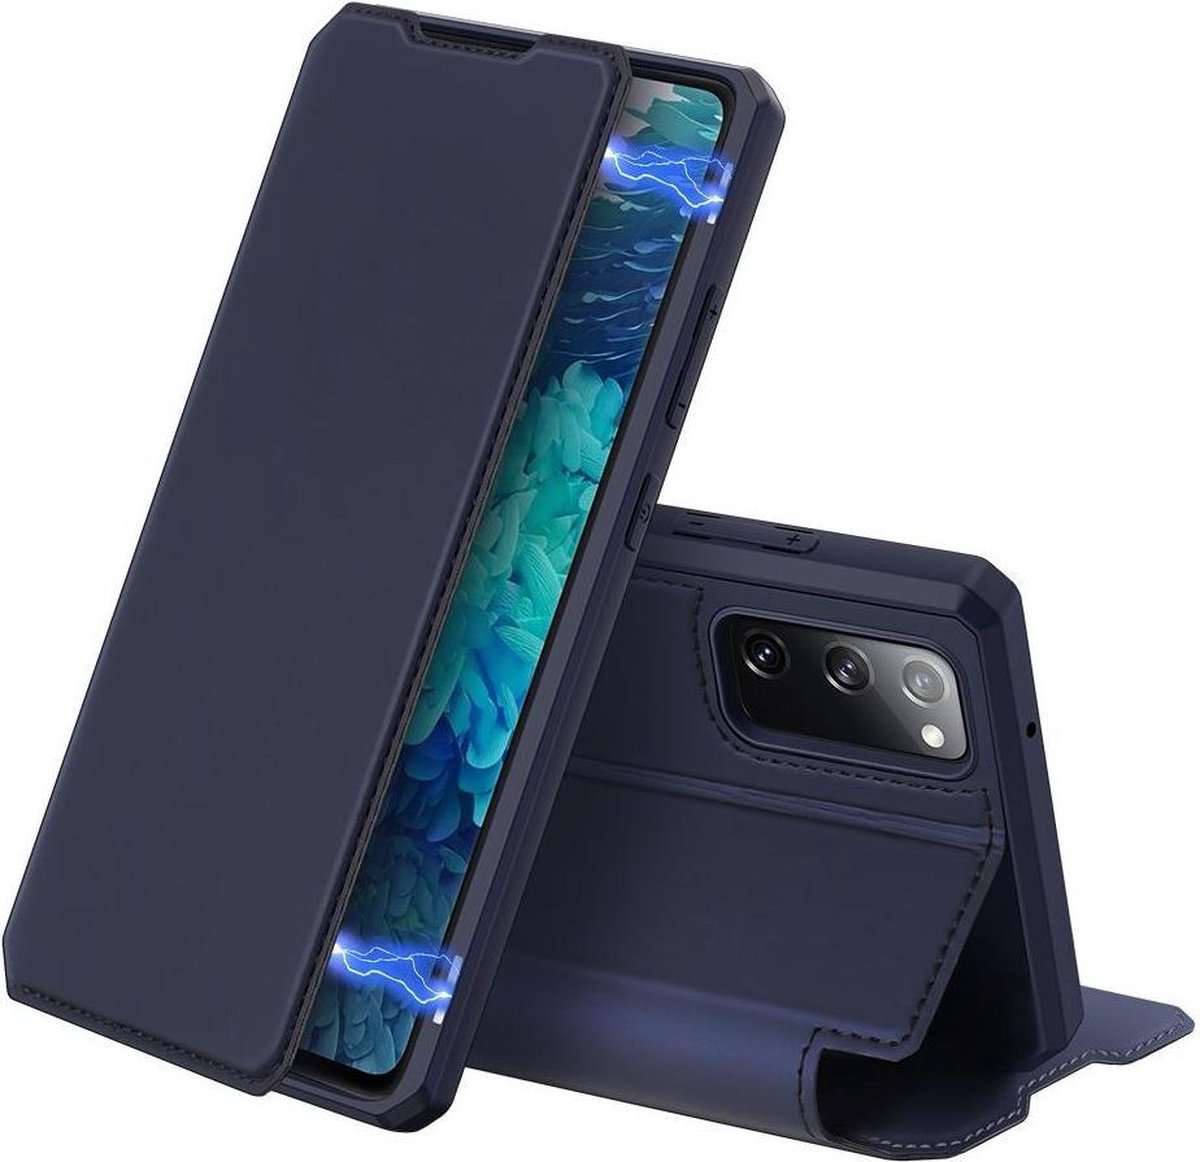 Dux Ducis Skin X Series Samsung Galaxy S20 FE Hoesje Blauw